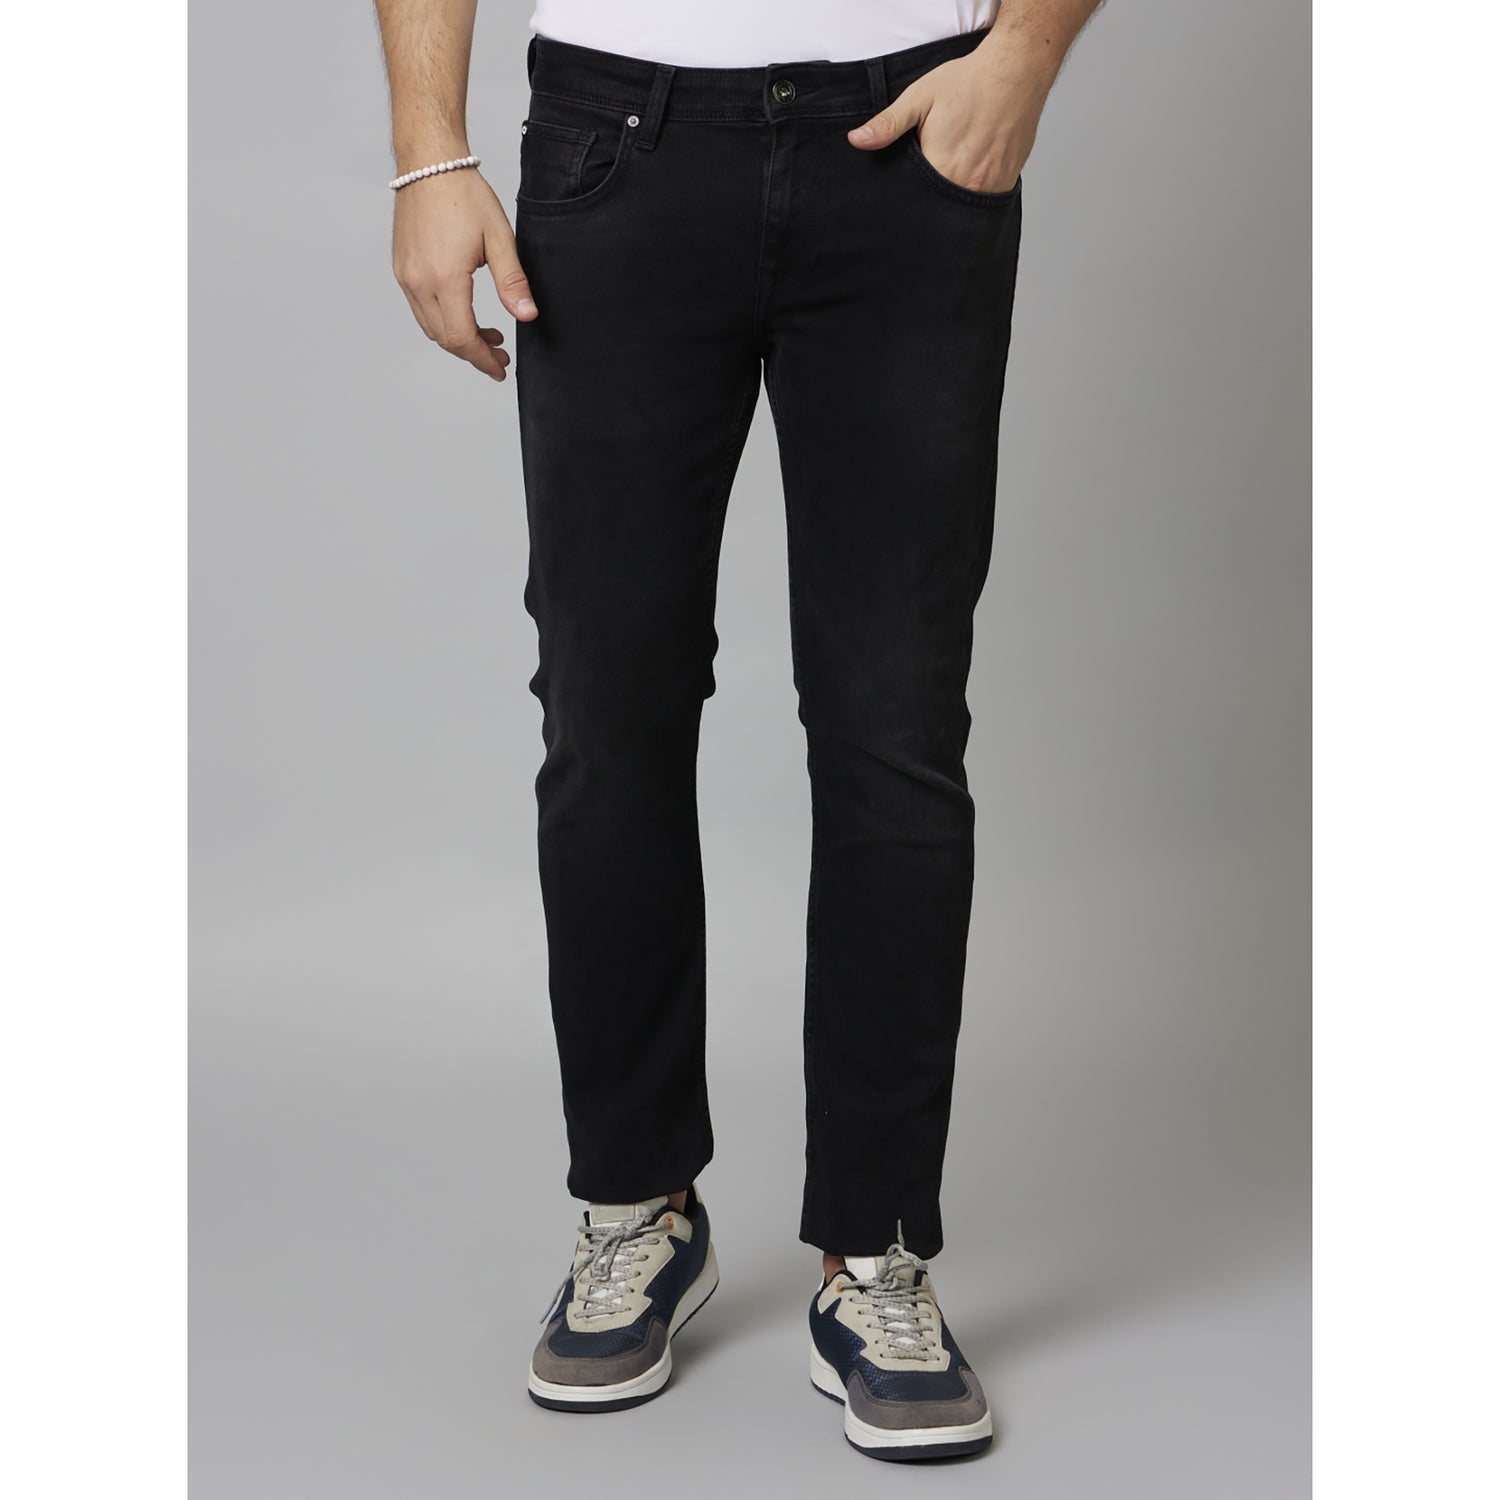 Black Solid Cotton Jeans (COECONOIR25)